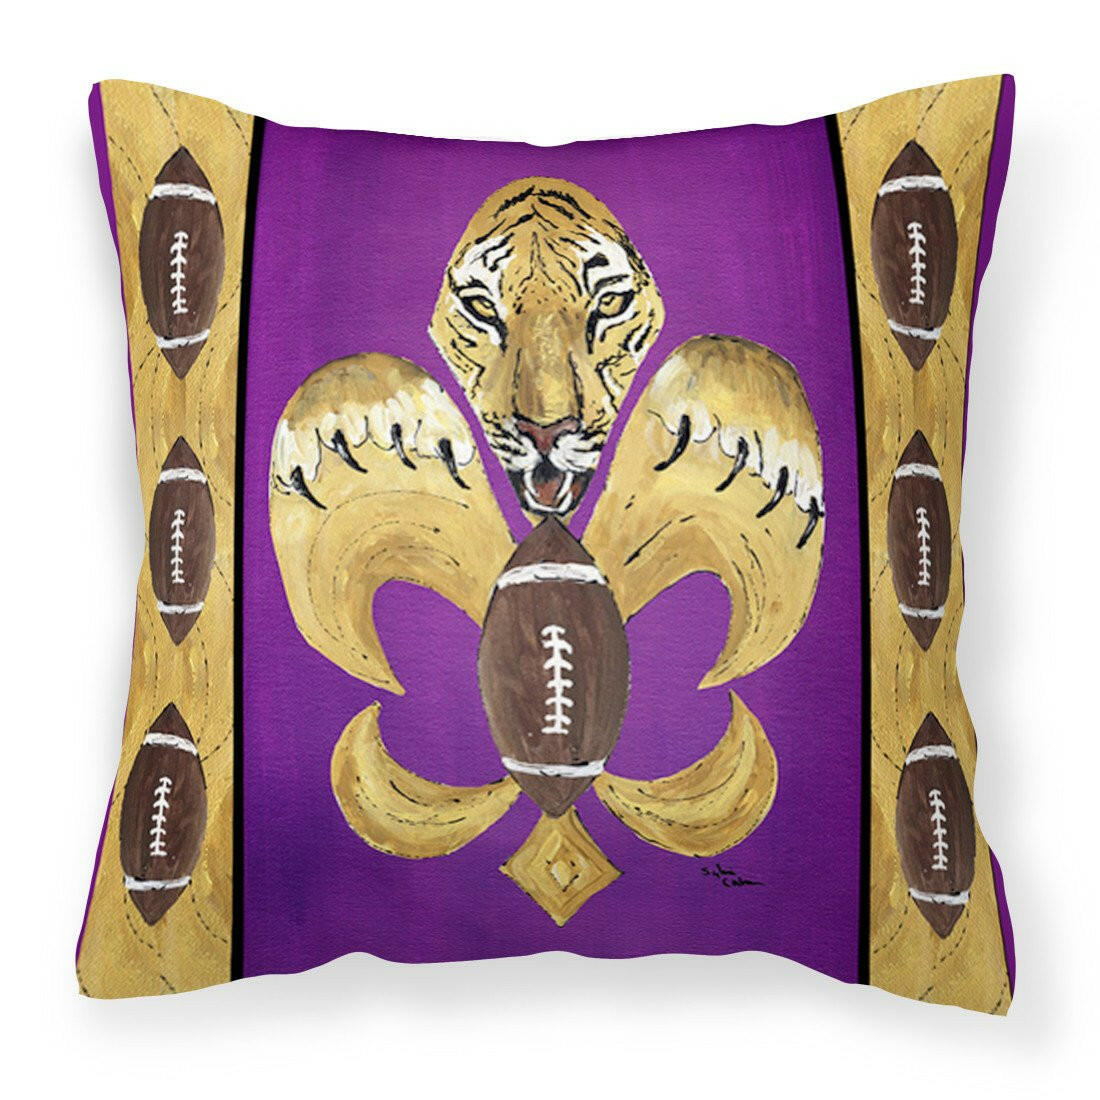 Tiger Football Fleur de lis Fabric Decorative Pillow 8205PW1414 - the-store.com